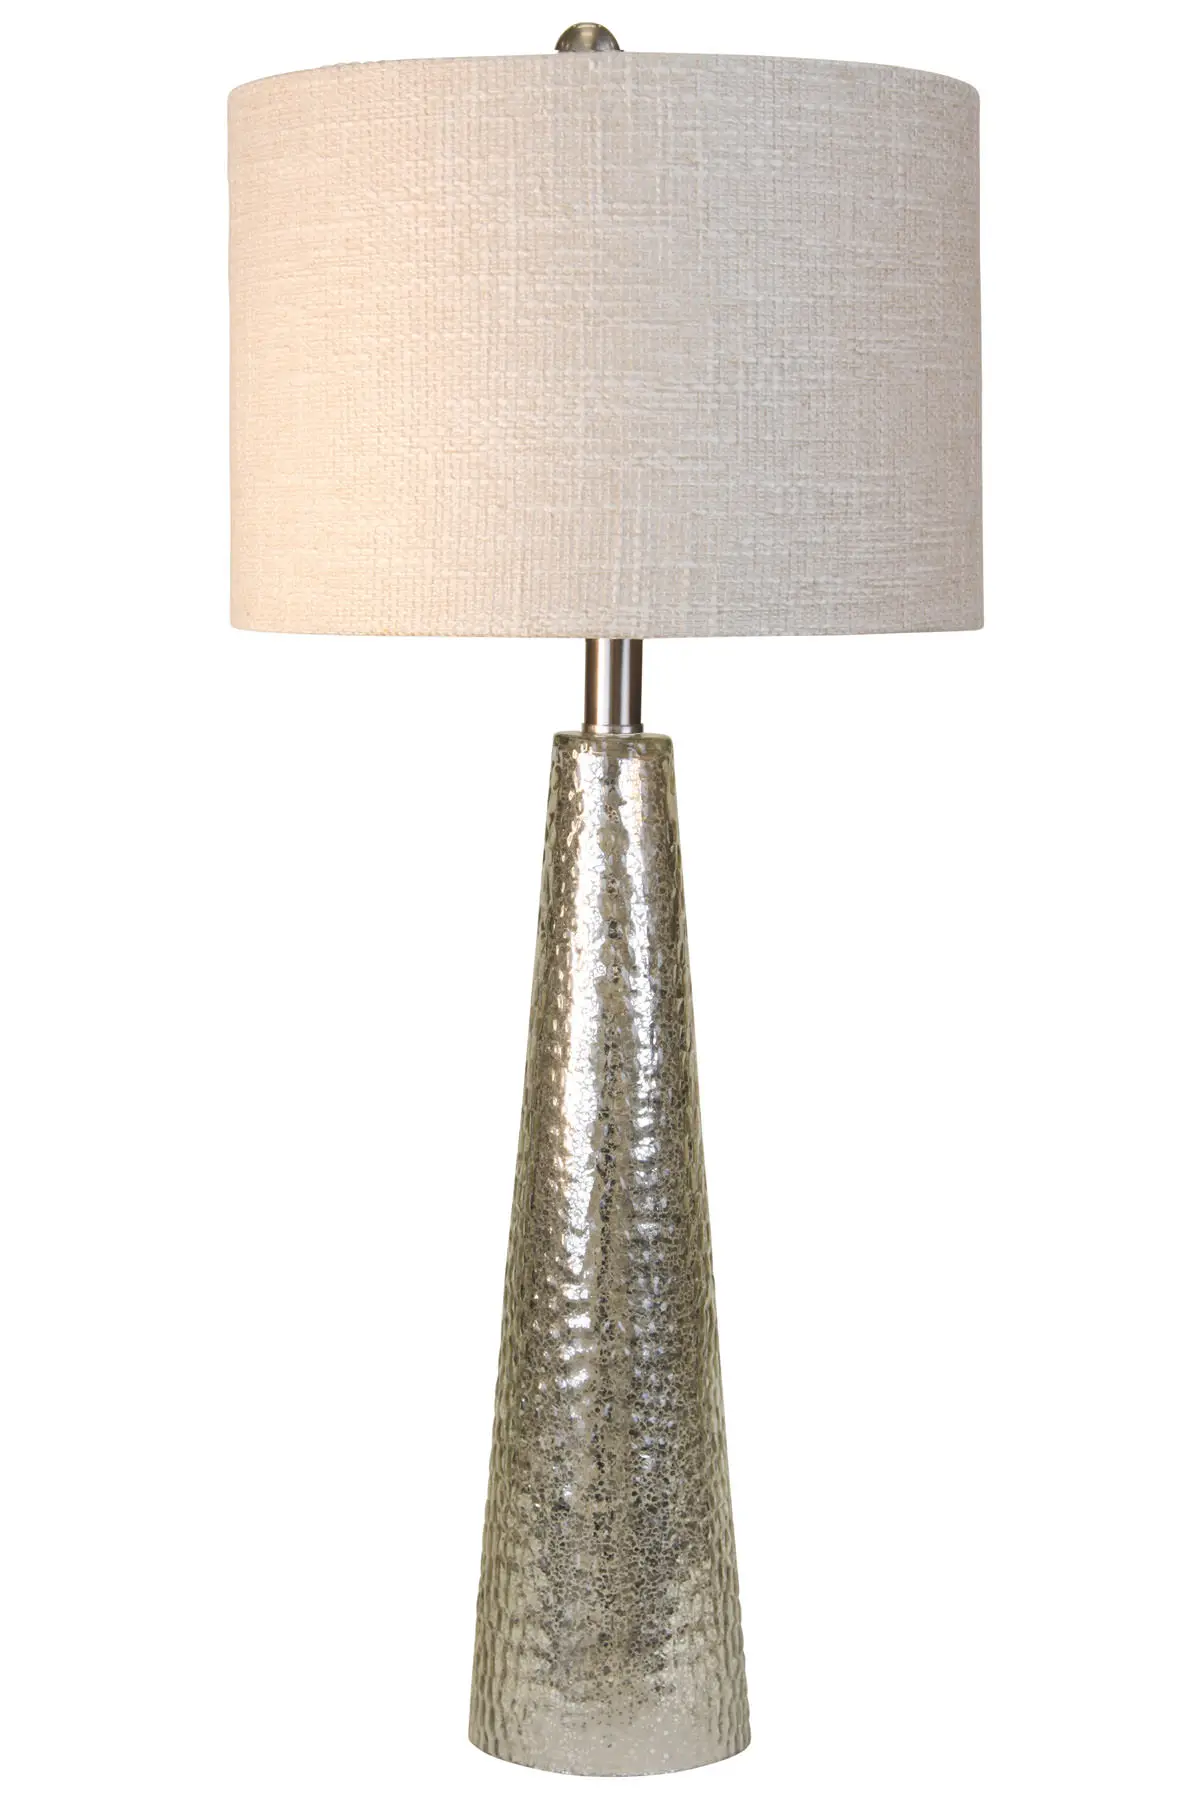 

Настольная лампа HMTX, 29 дюймов, Northbay, Меркурий, отделка стекла, белая ткань, затенение